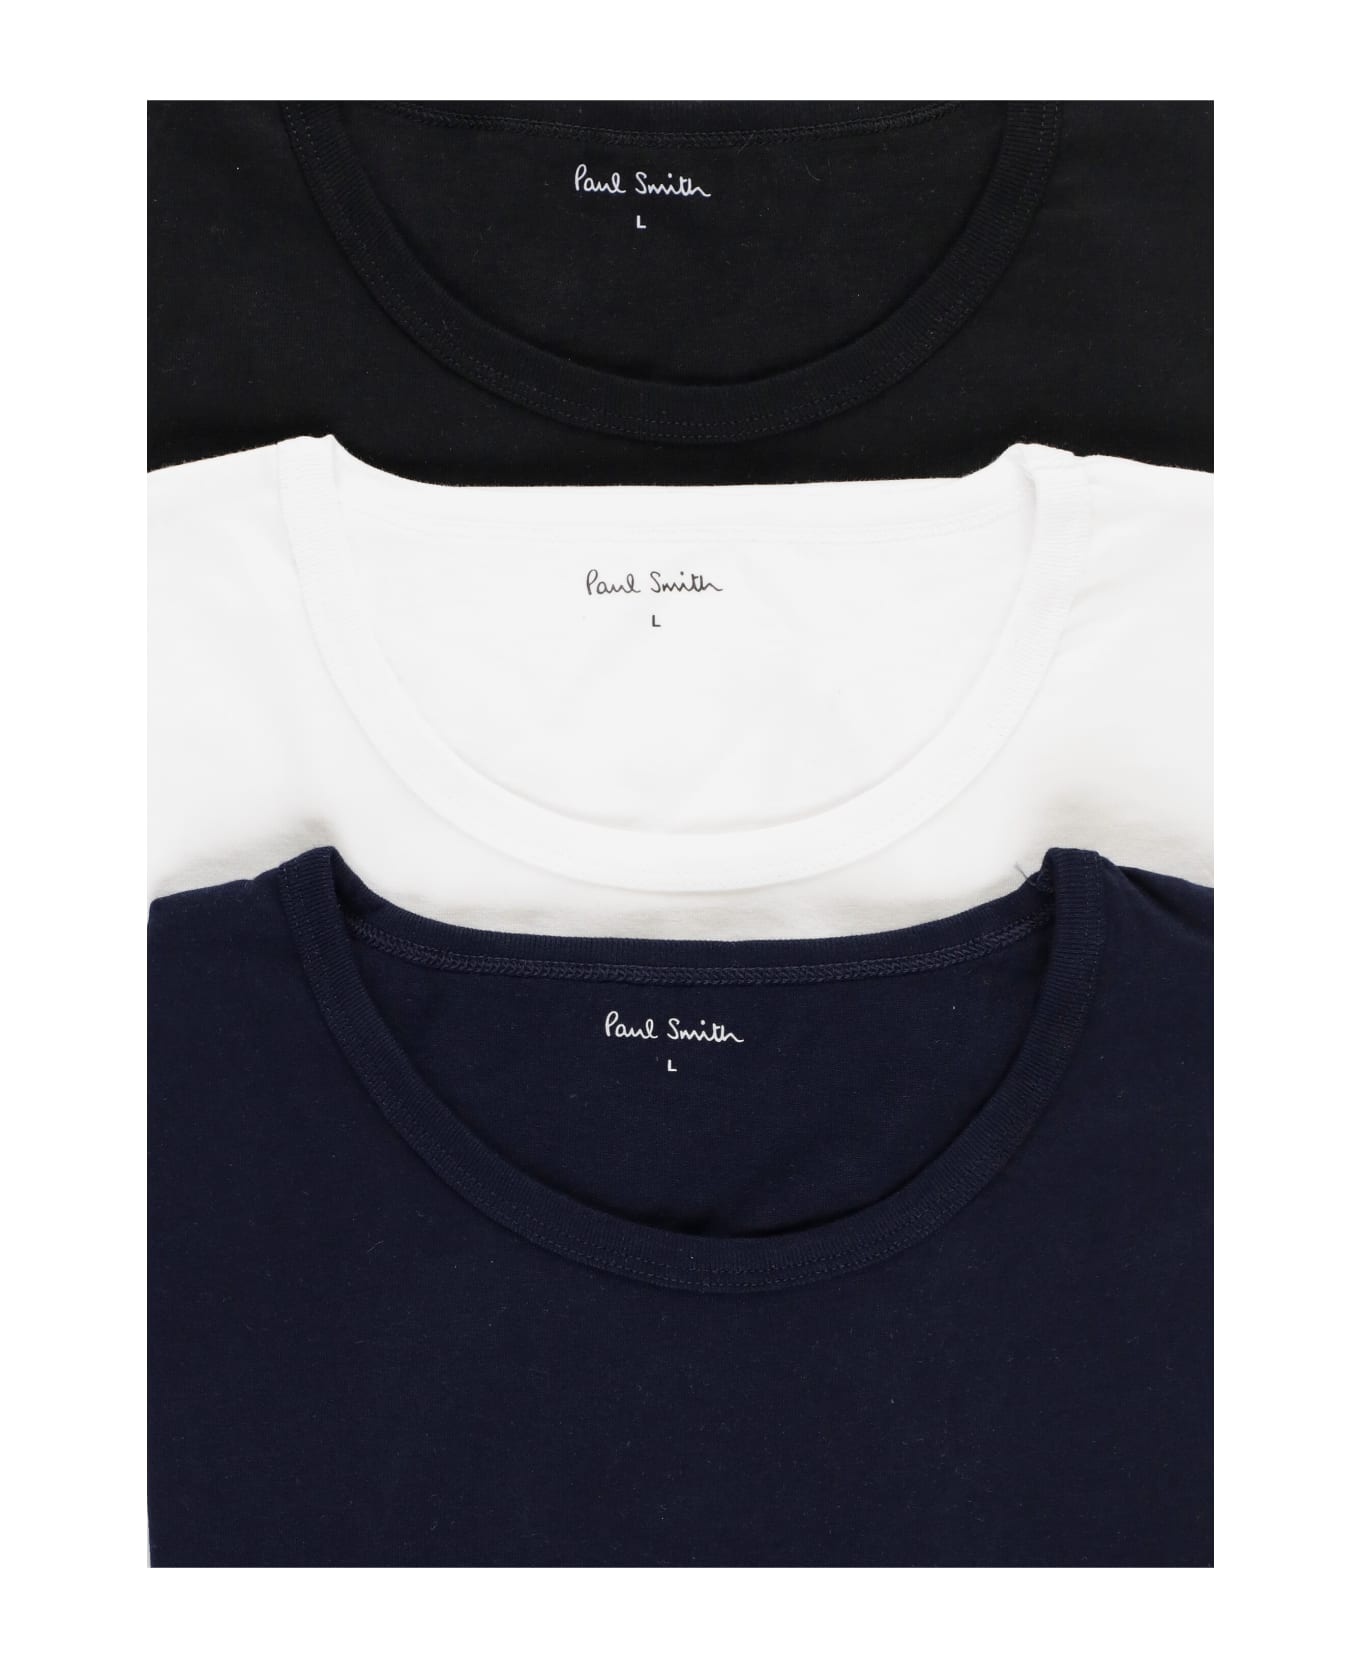 Paul Smith 3 Cotton T-shirt Set - MultiColour